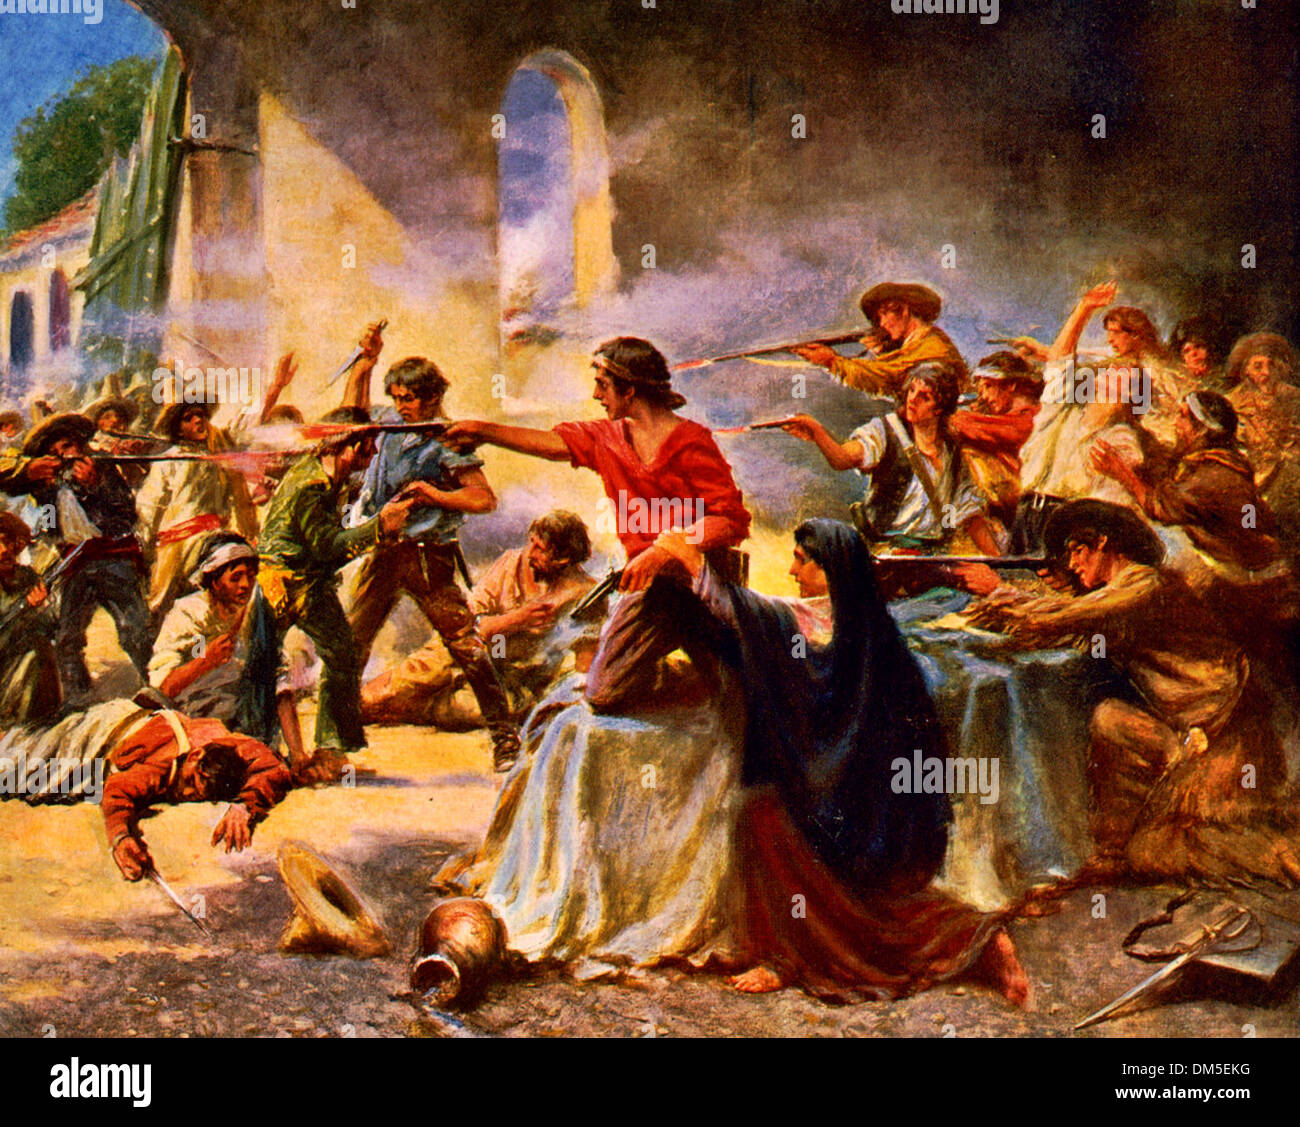 Schlacht von Alamo, San Antonio, Texas, 1836 Stockfoto